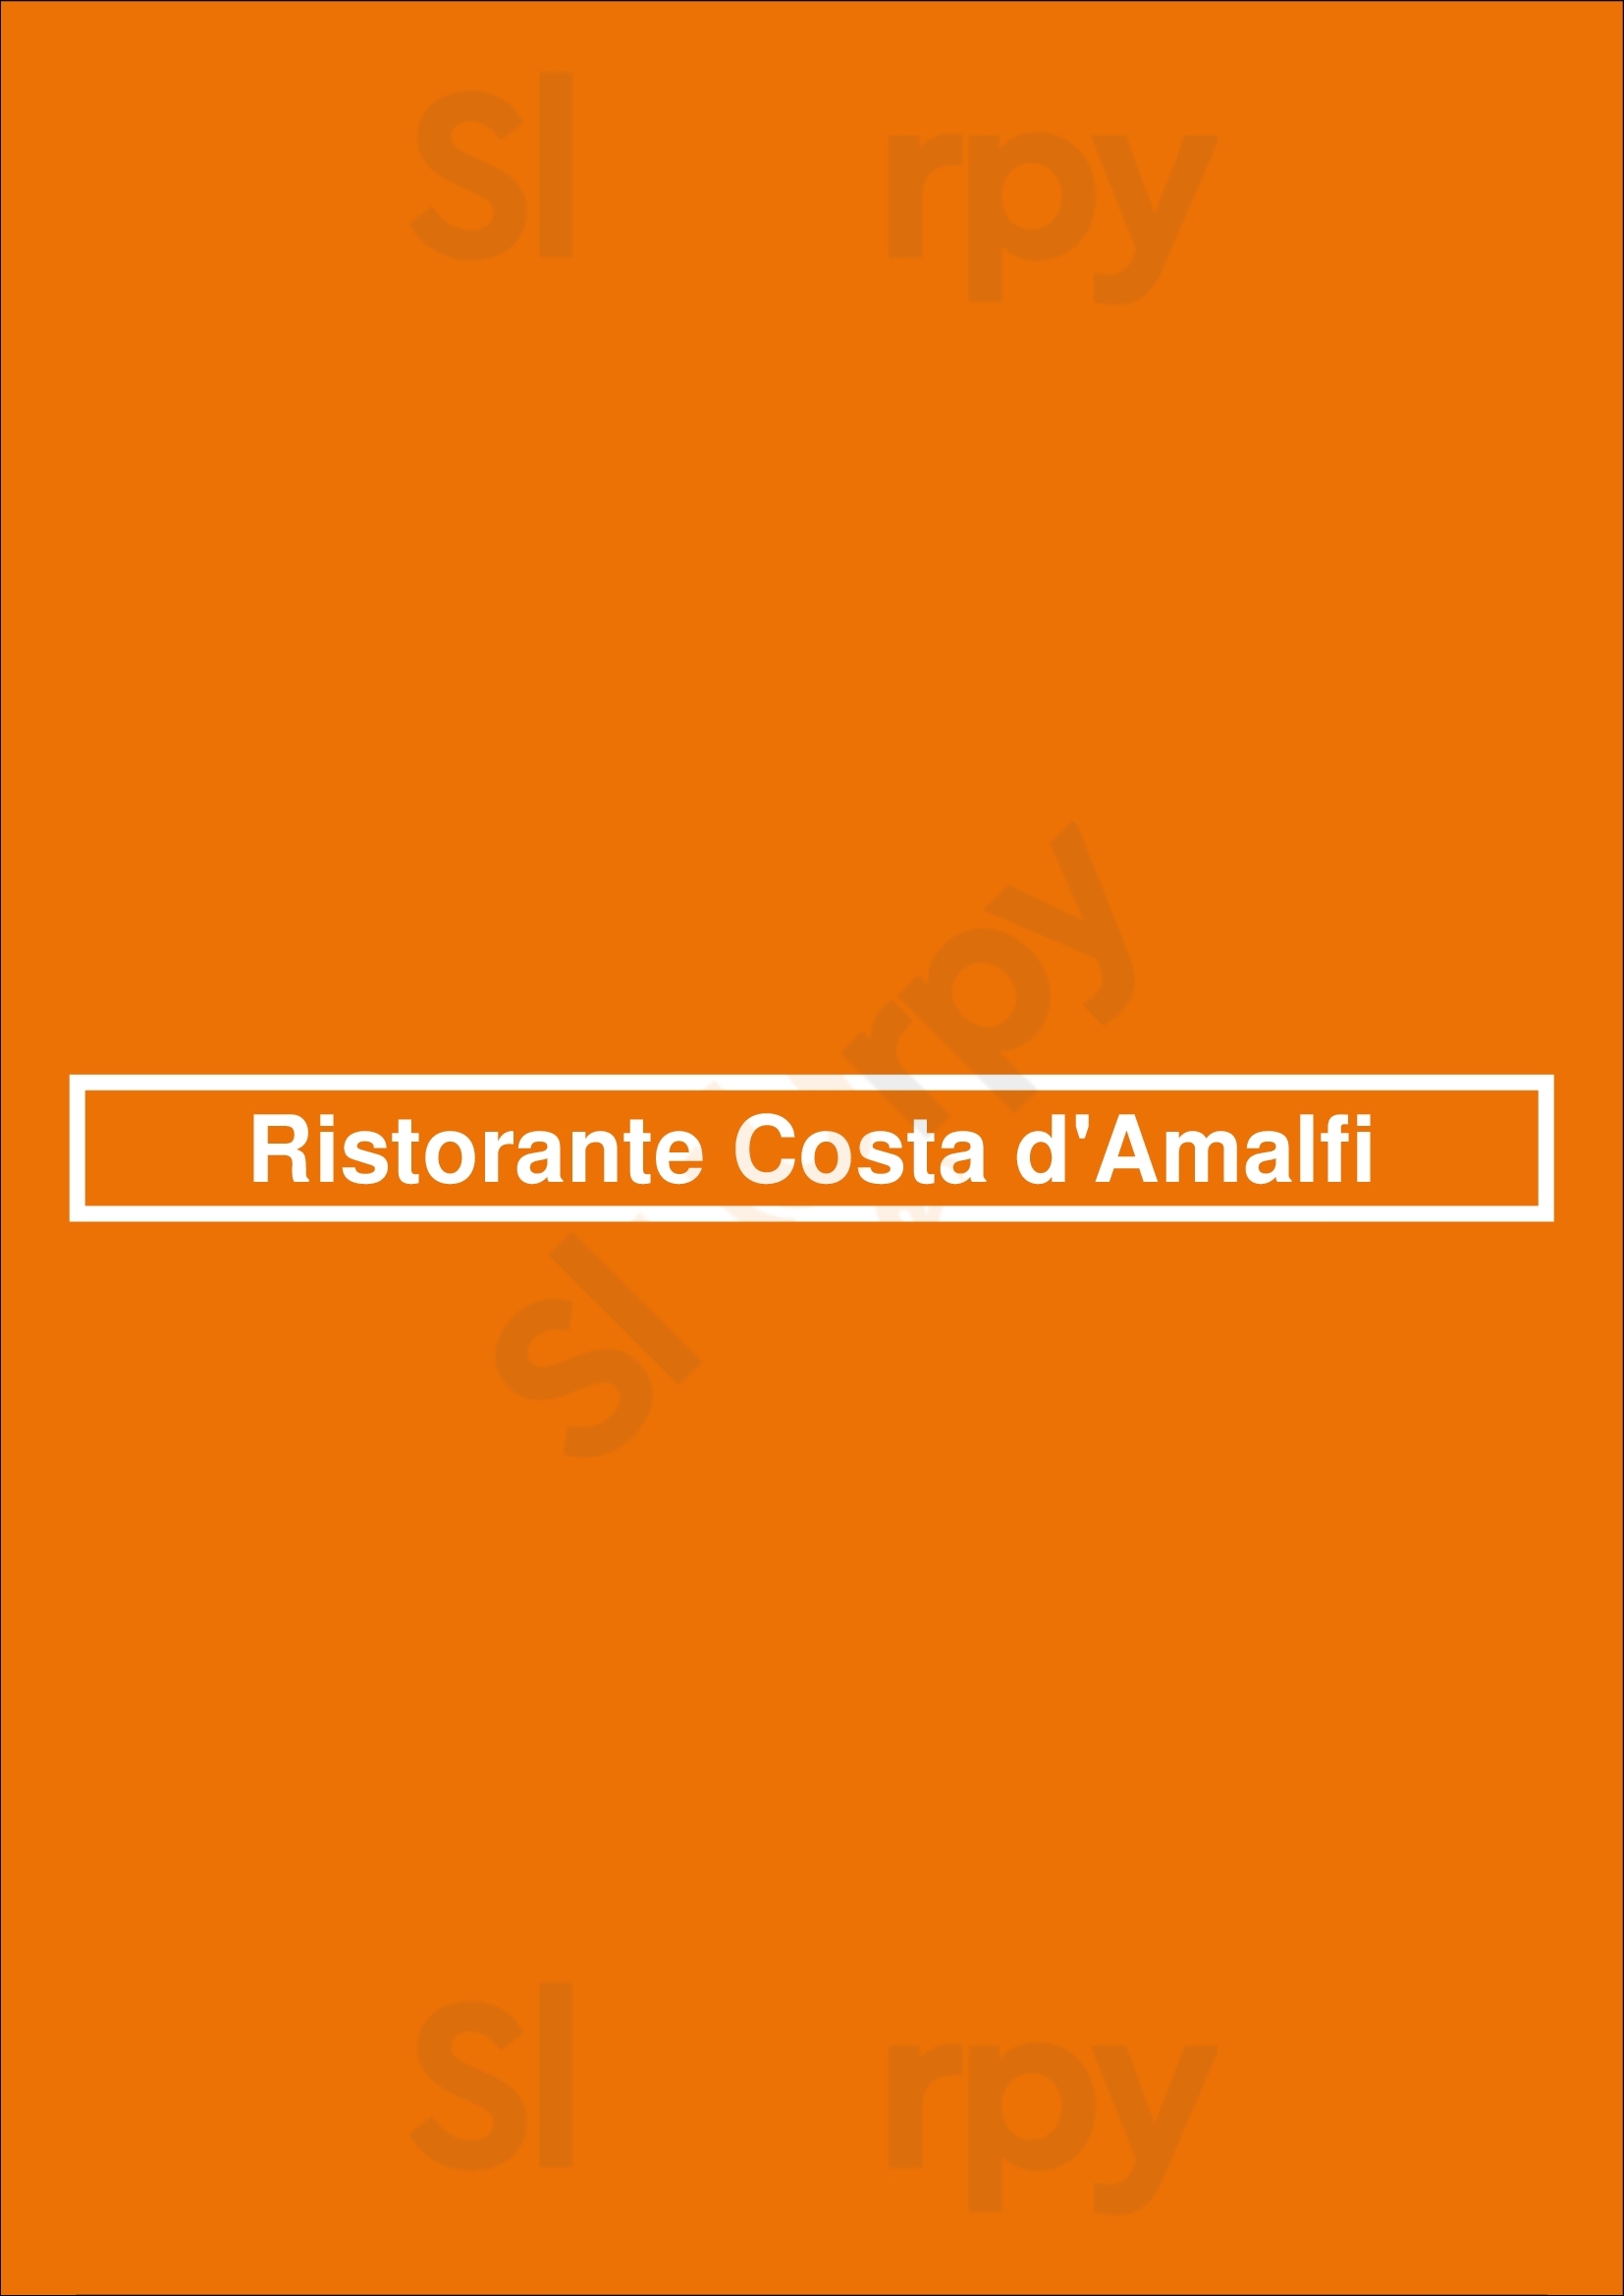 Ristorante Costa D'amalfi Paris Menu - 1